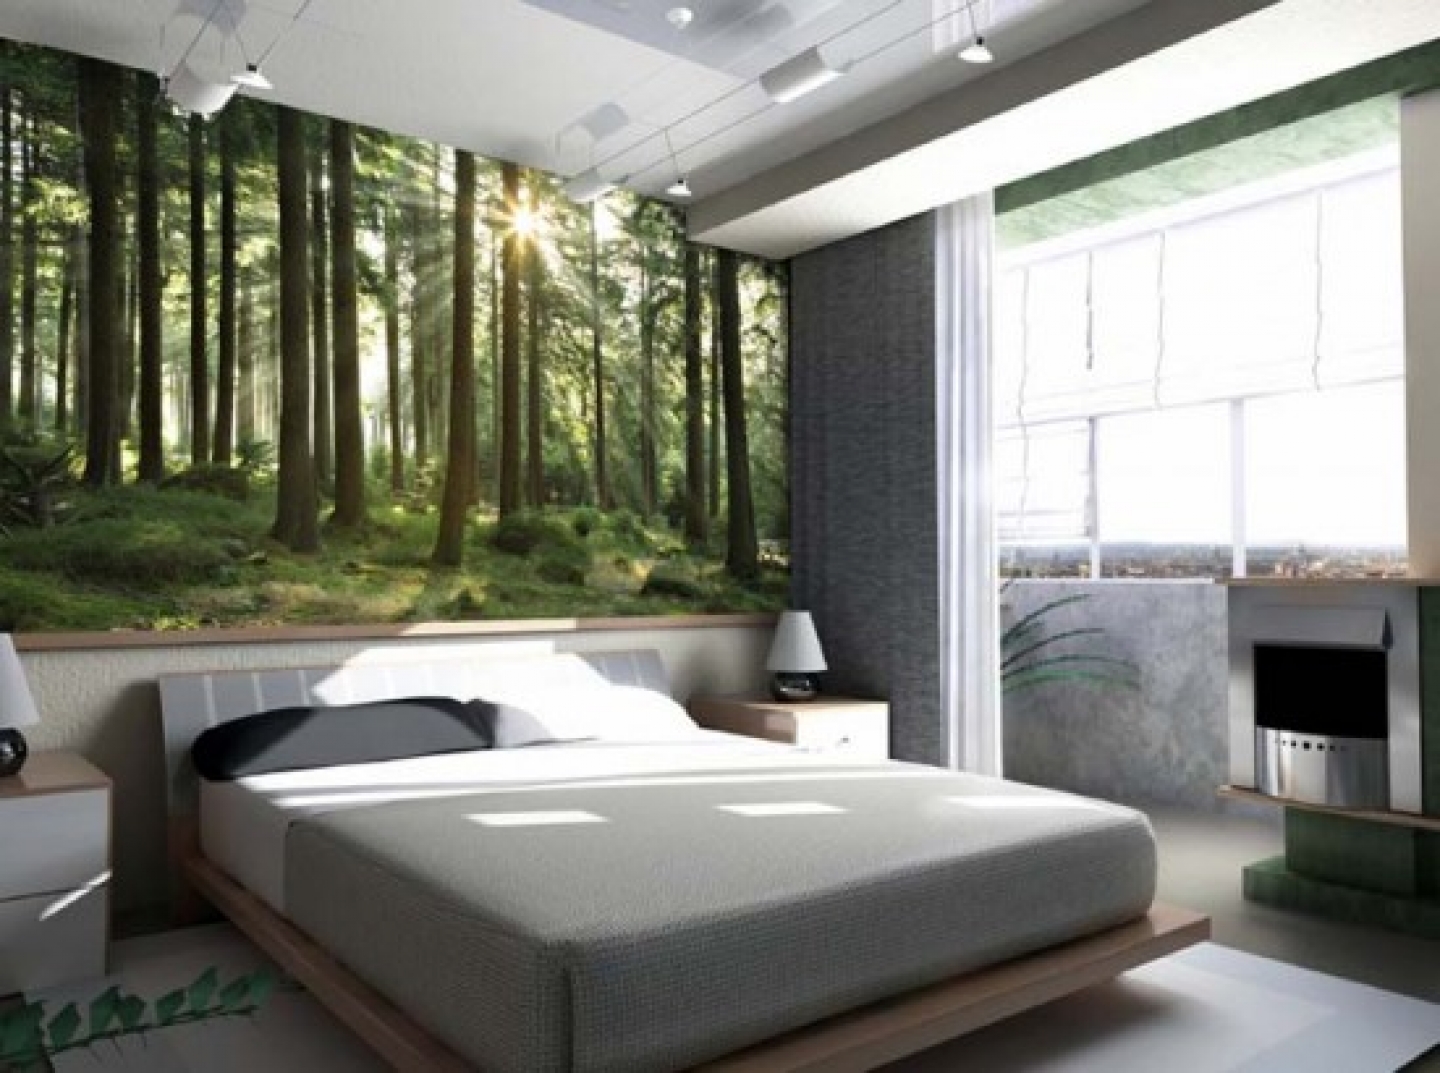 HD Modern Wallpaper For Living Room